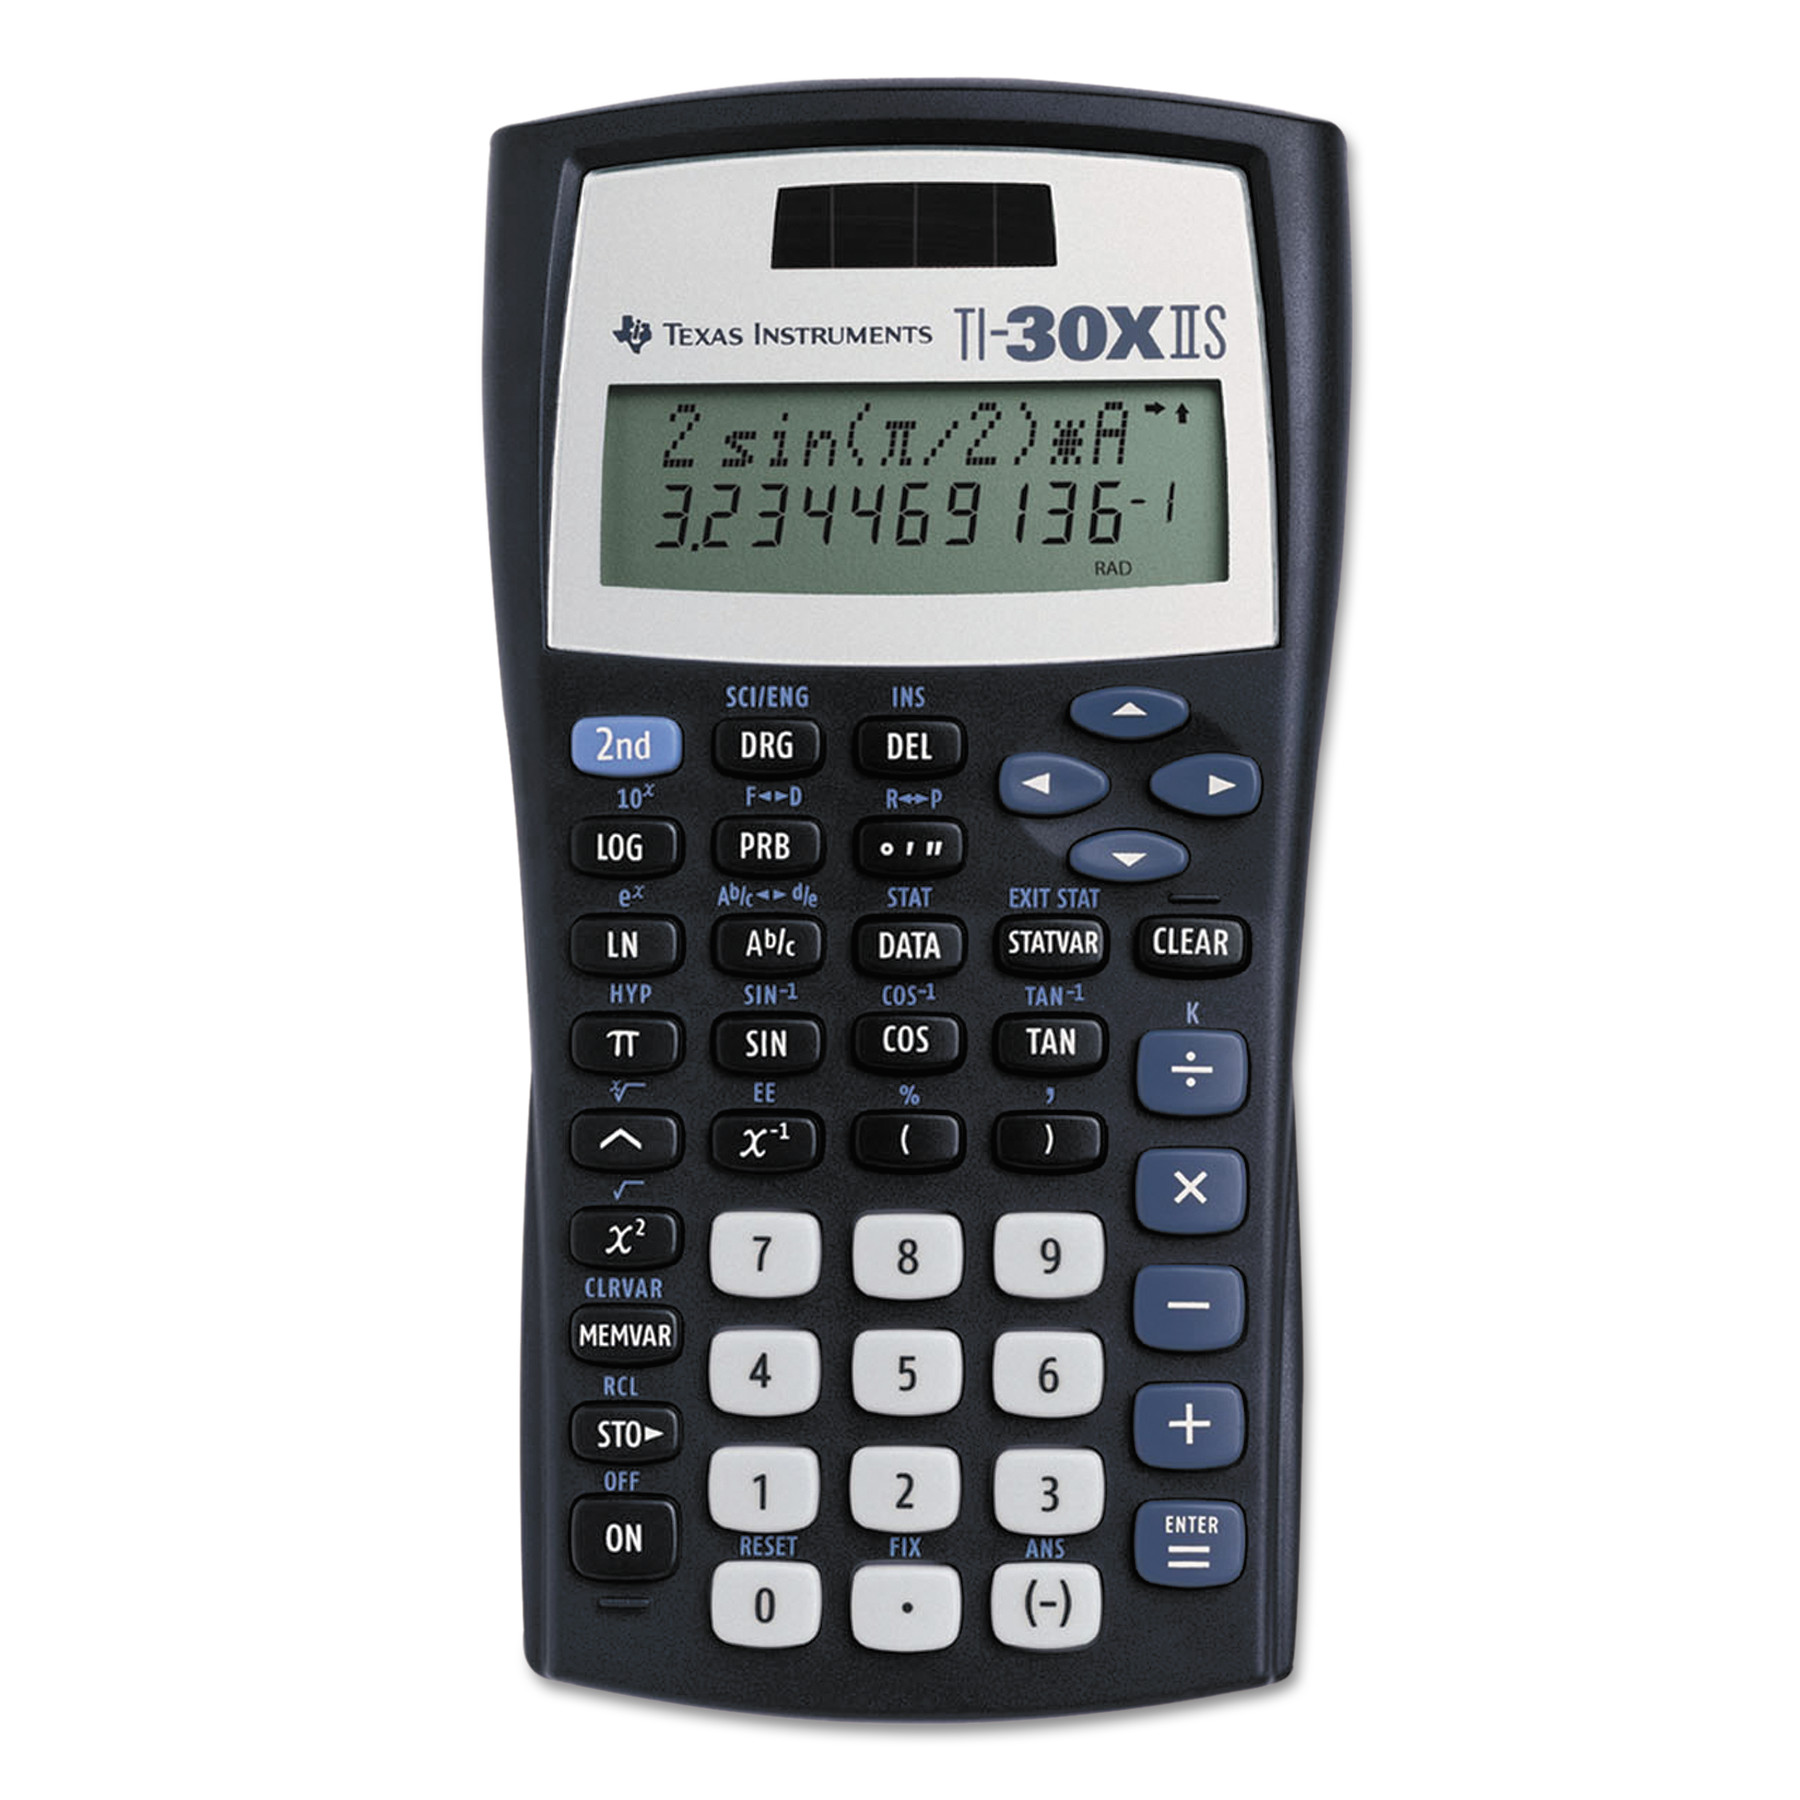 A Calculator